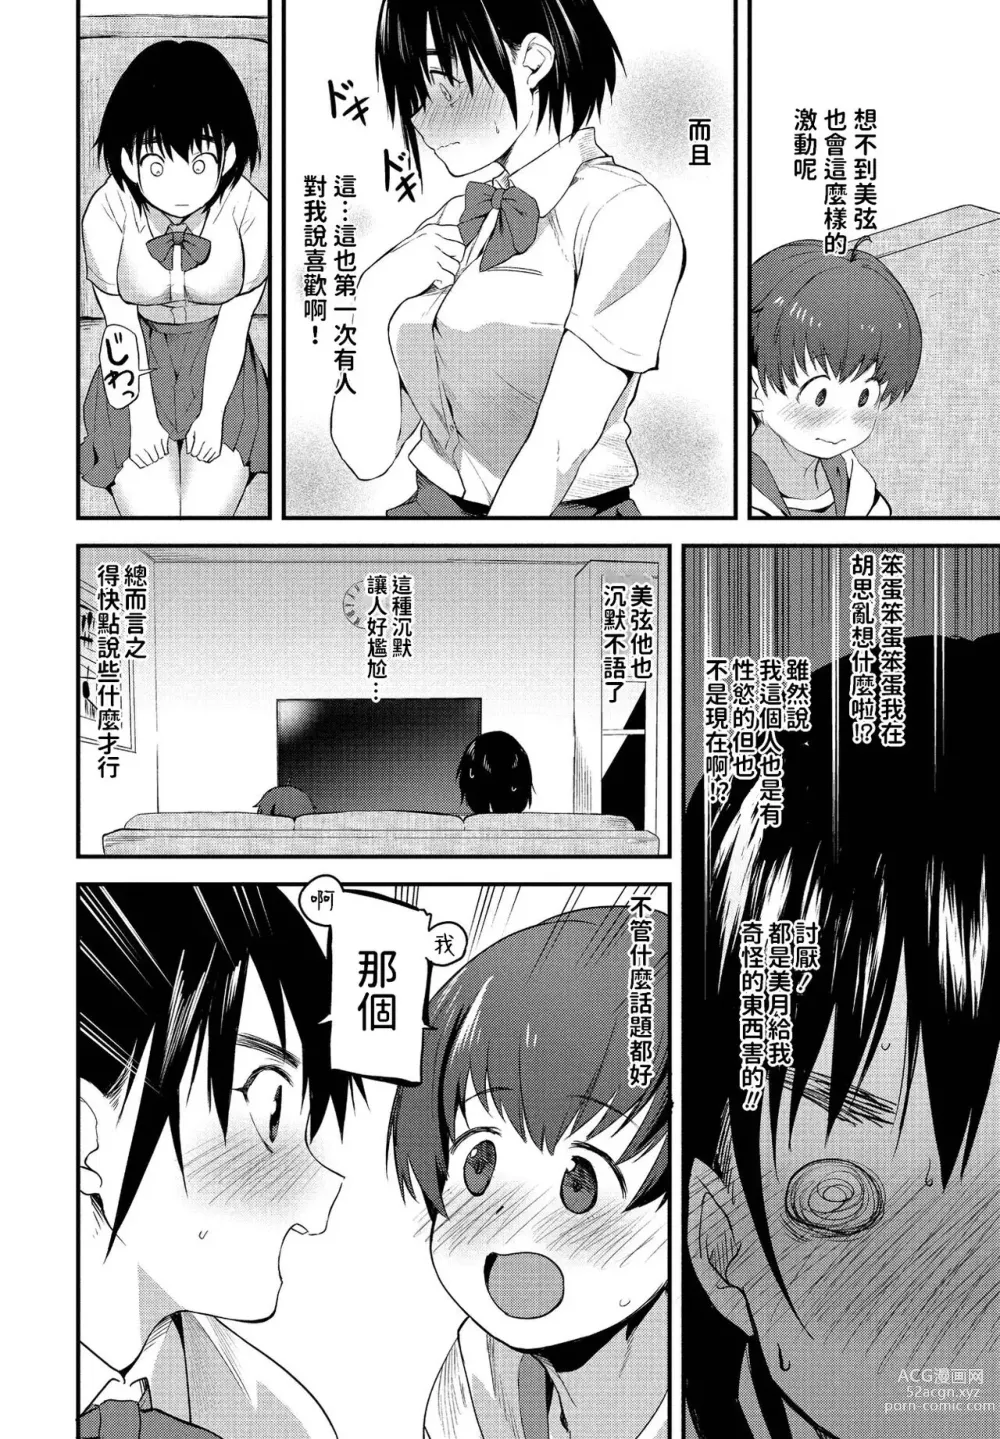 Page 6 of manga Massugu na Kimi ga Suki